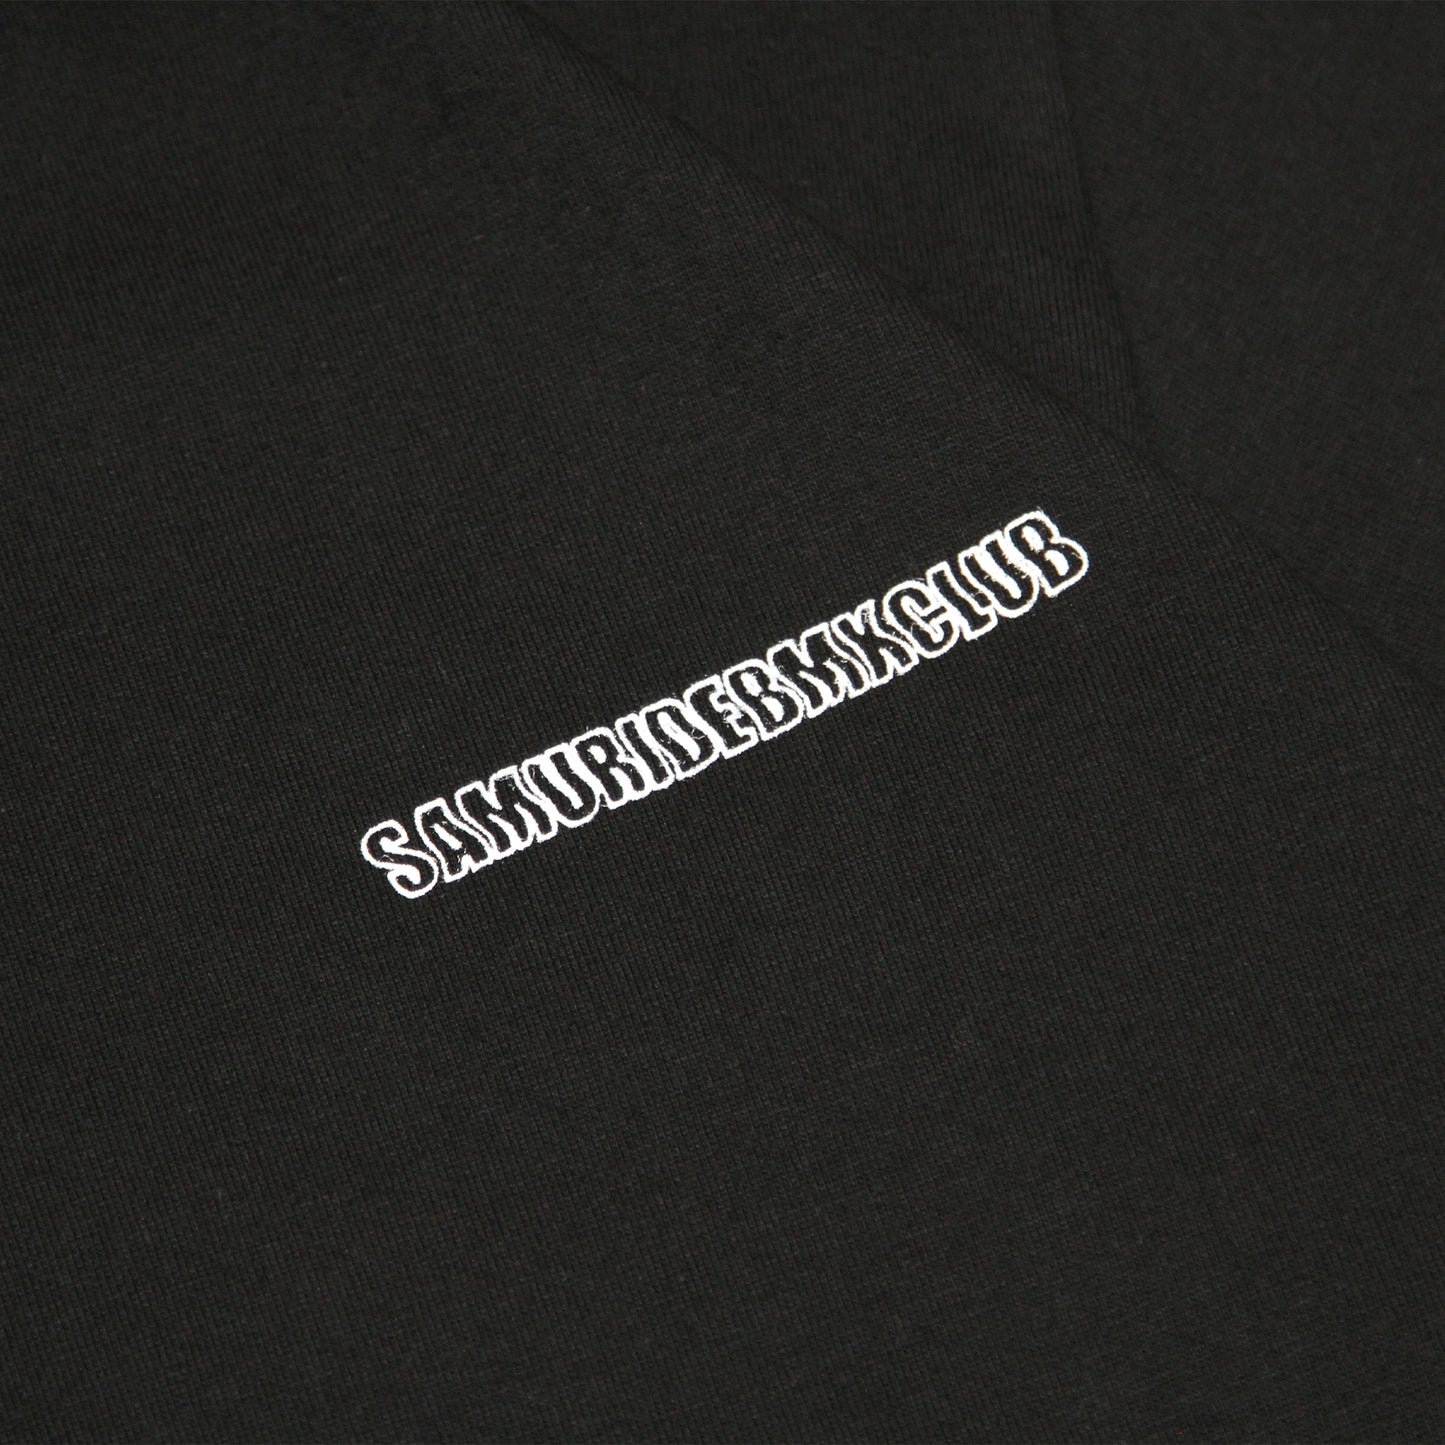 SAMURIDE - SMRD Back Ride T-Shirt/Black &amp; White